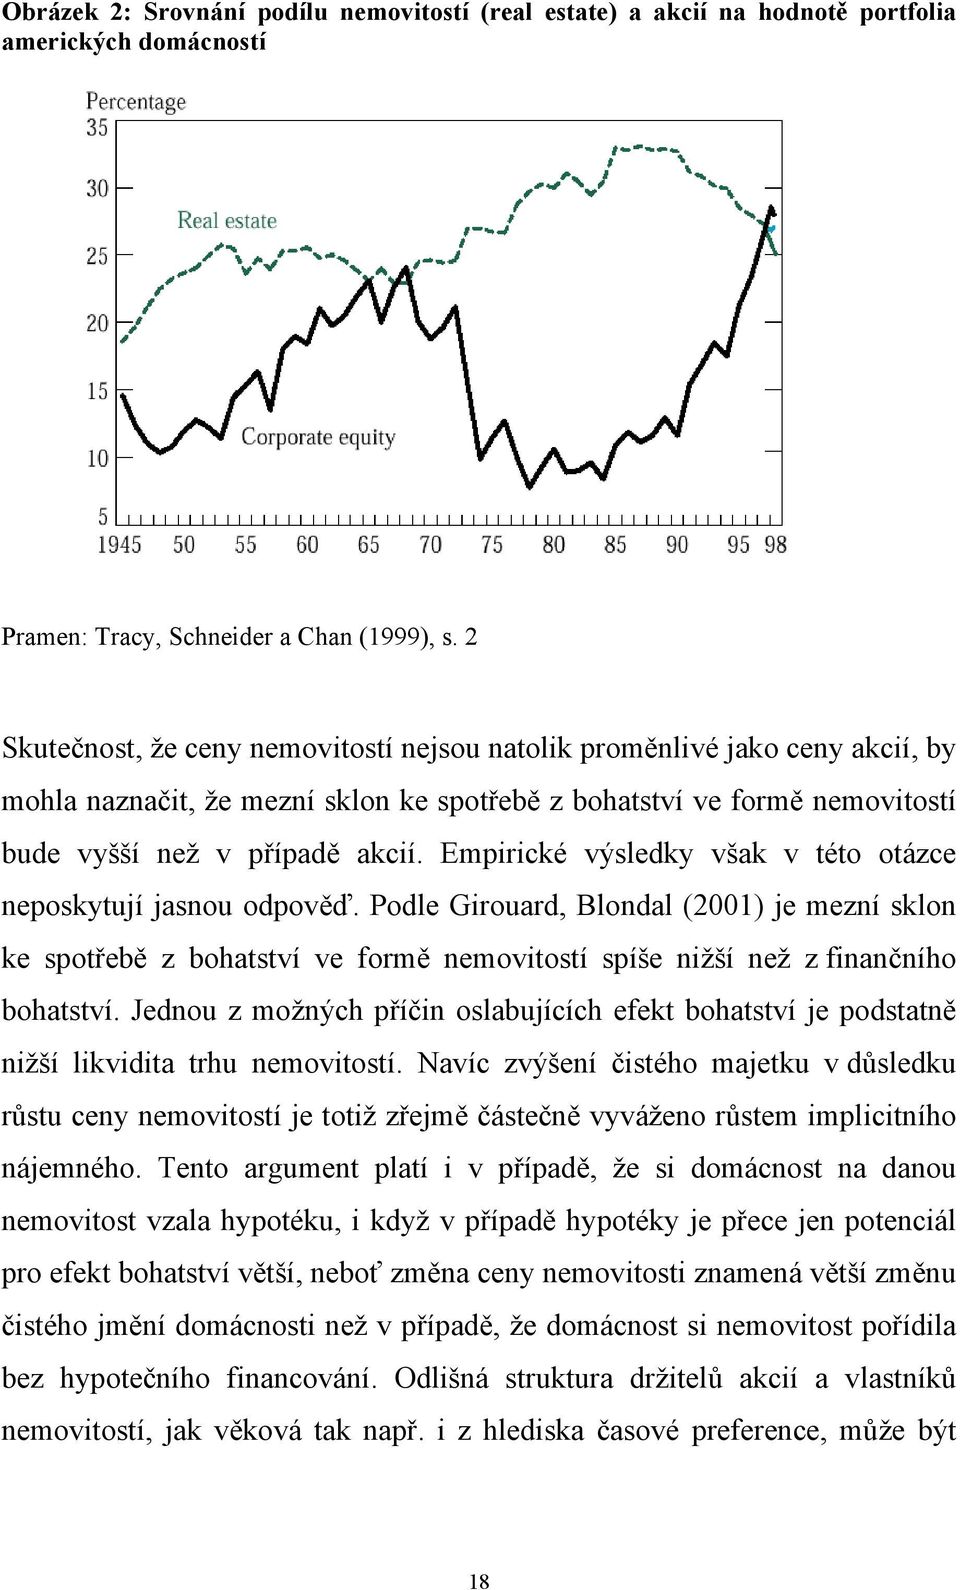 Empirické výsledky však v éo oázce neposkyují jasnou odpověď. Podle Girouard, Blondal (2001) je mezní sklon ke spořebě z bohasví ve formě nemoviosí spíše nižší než z finančního bohasví.